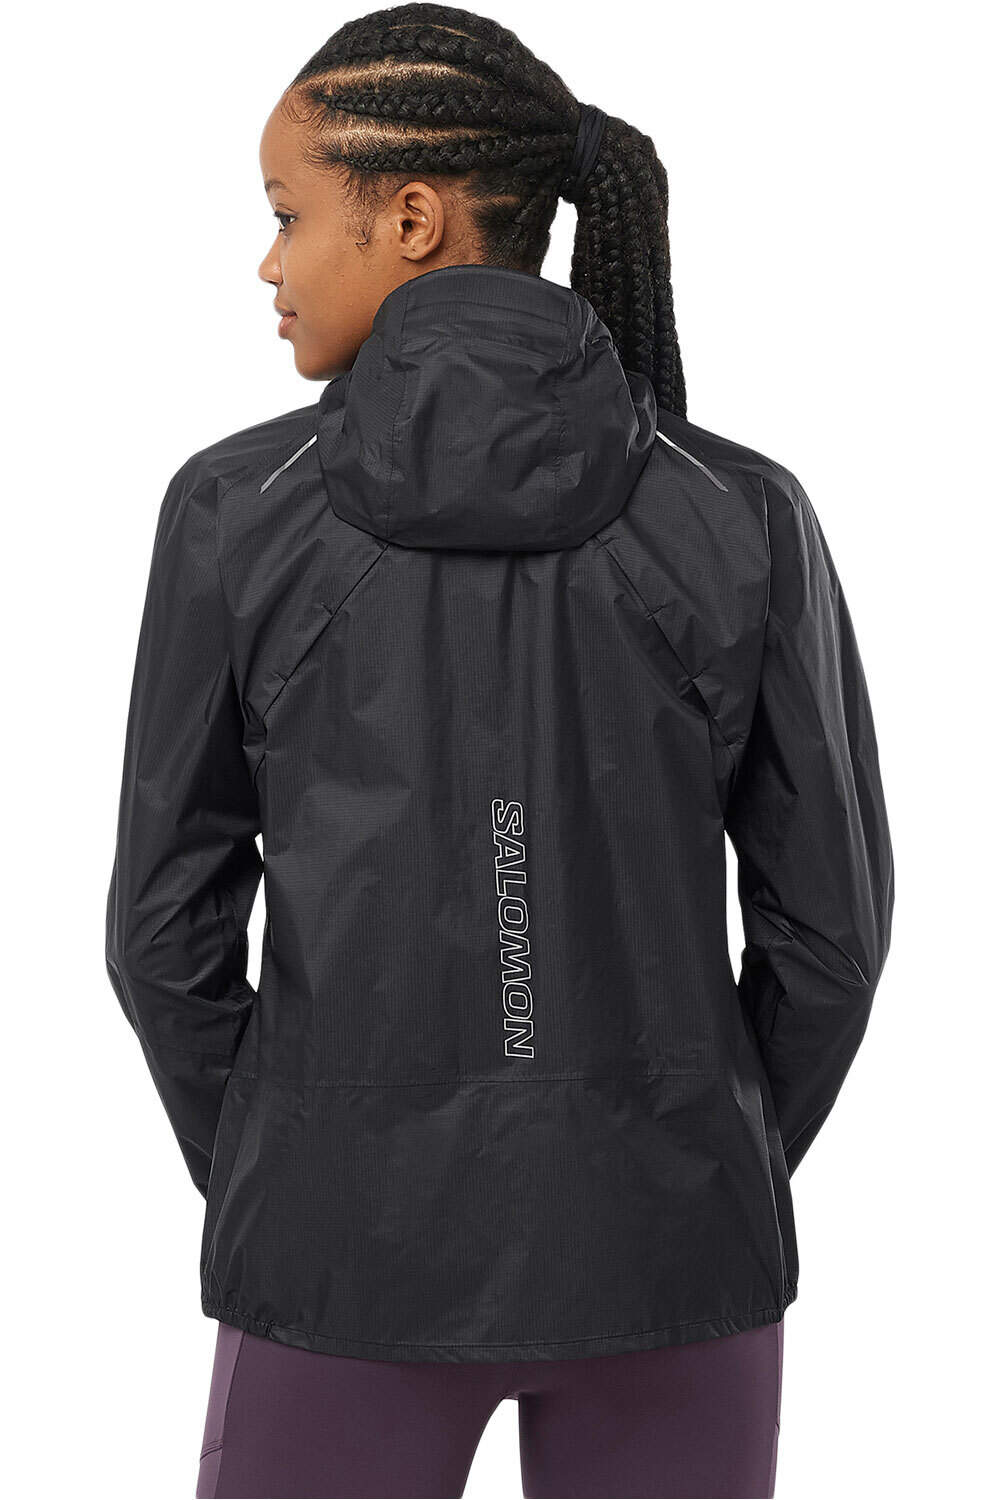 Salomon Bonatti Waterproof Shell Jacket Women deep black